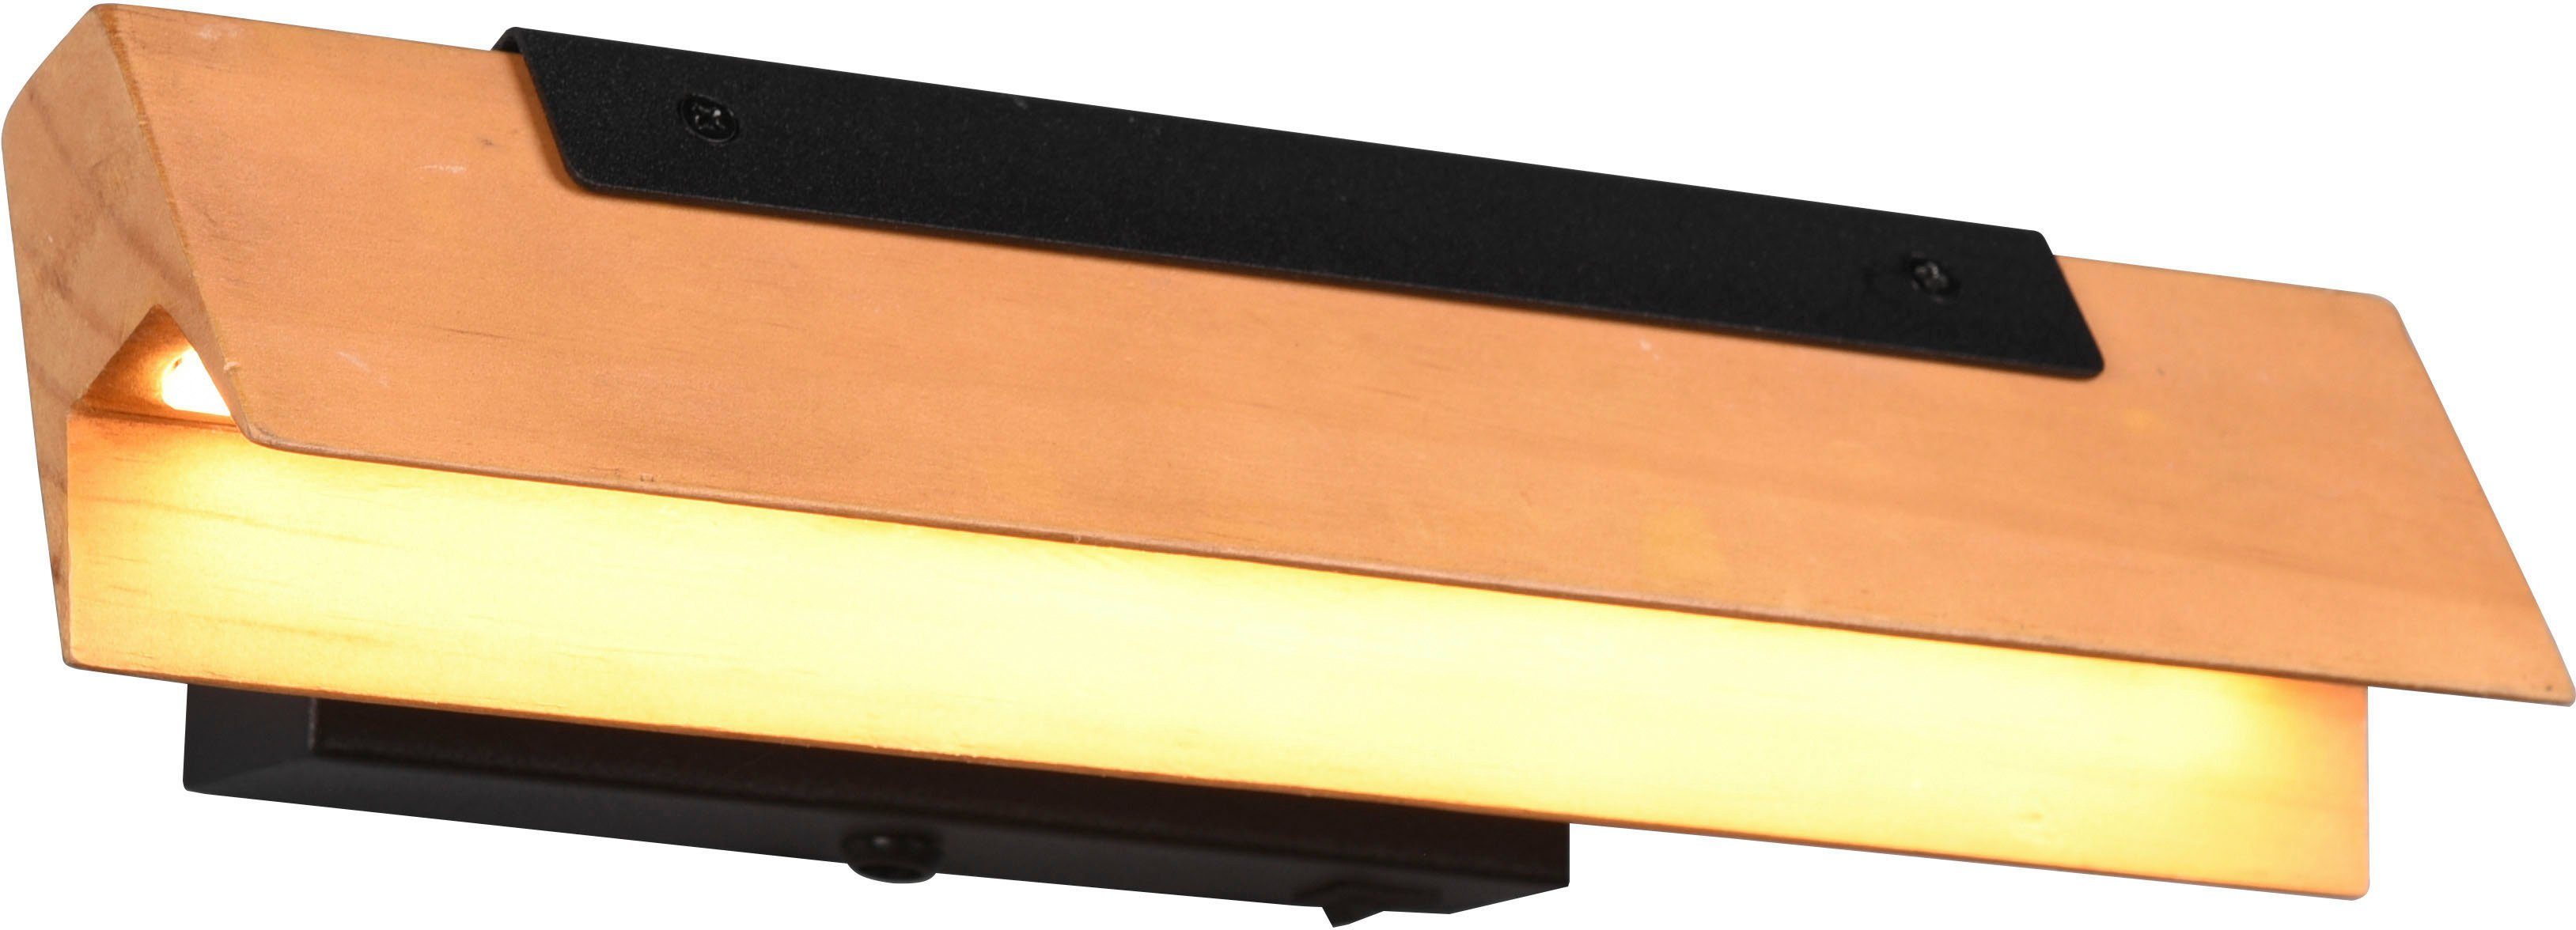 integriert, TRIO 1100 Lumen LED Wandlampe schwenkbar, Wandleuchte 3 LED Warmweiß, Holzschirm LED Dimmstufen Kerala, Leuchten fest Ein-/Ausschalter, warmweiß, Dimmfunktion,